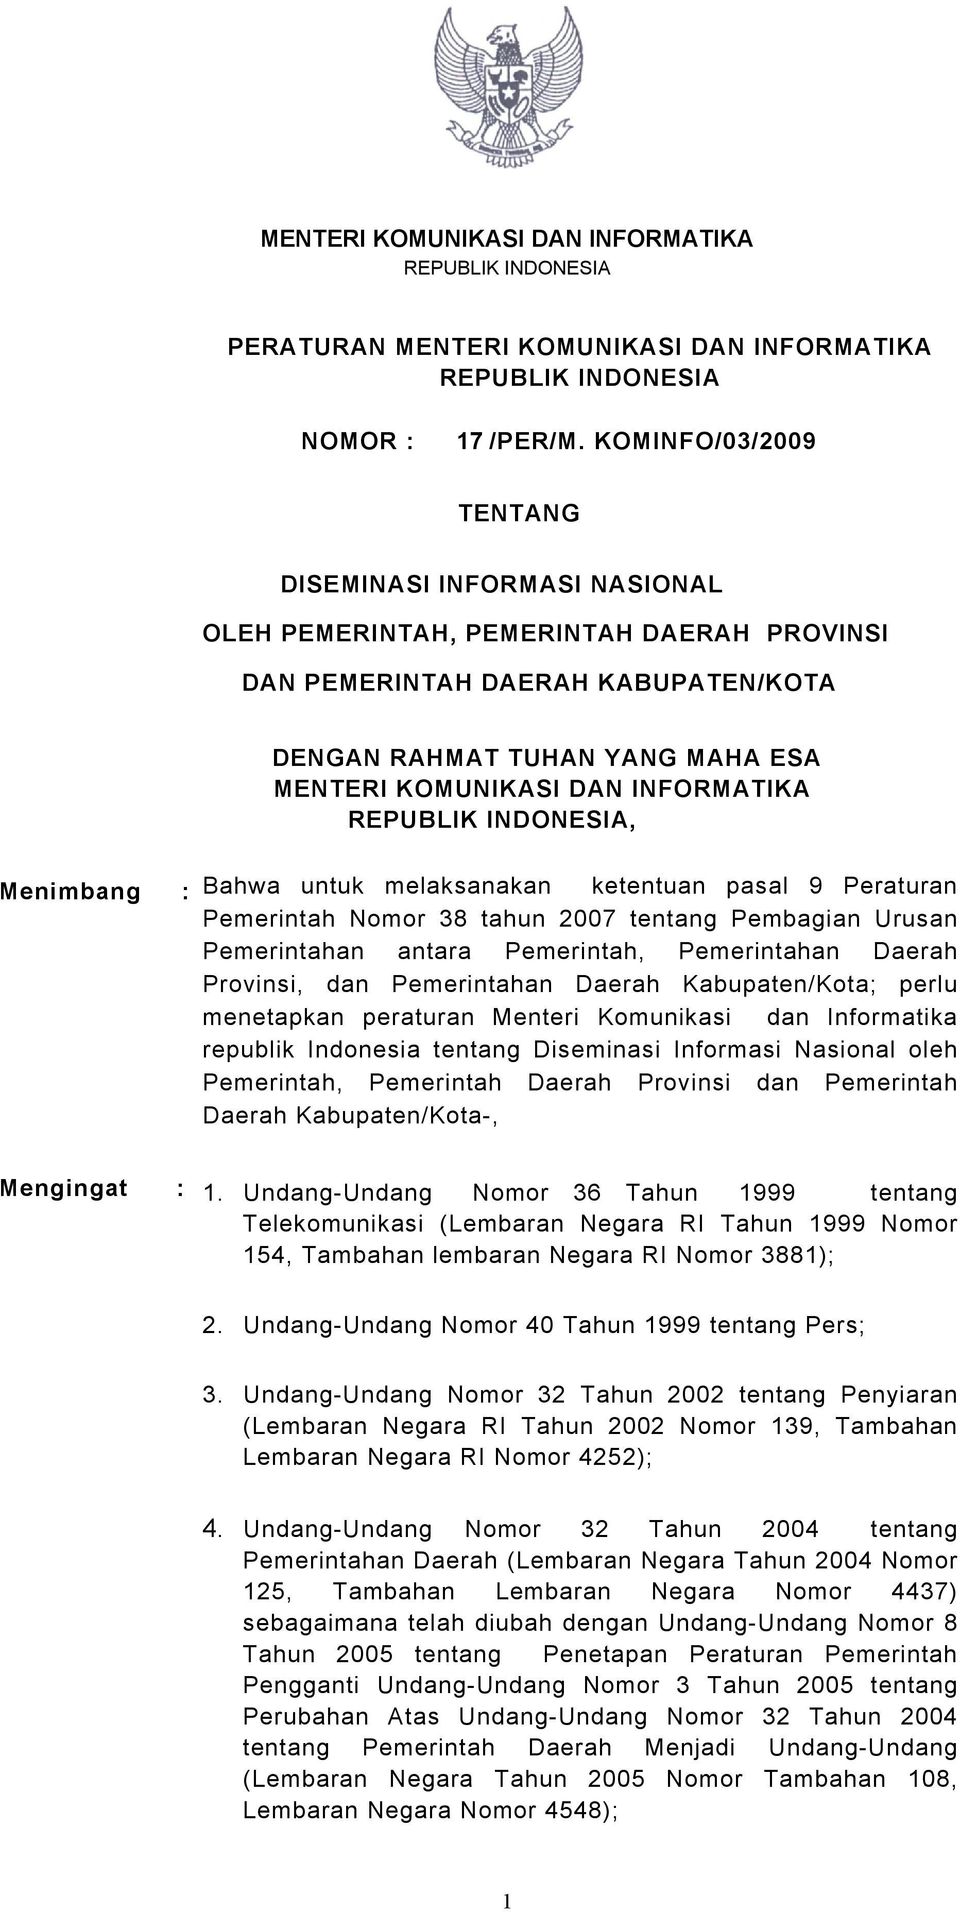 INFORMATIKA REPUBLIK INDONESIA, Menimbang : Bahwa untuk melaksanakan ketentuan pasal 9 Peraturan Pemerintah Nomor 38 tahun 2007 tentang Pembagian Urusan Pemerintahan antara Pemerintah, Pemerintahan